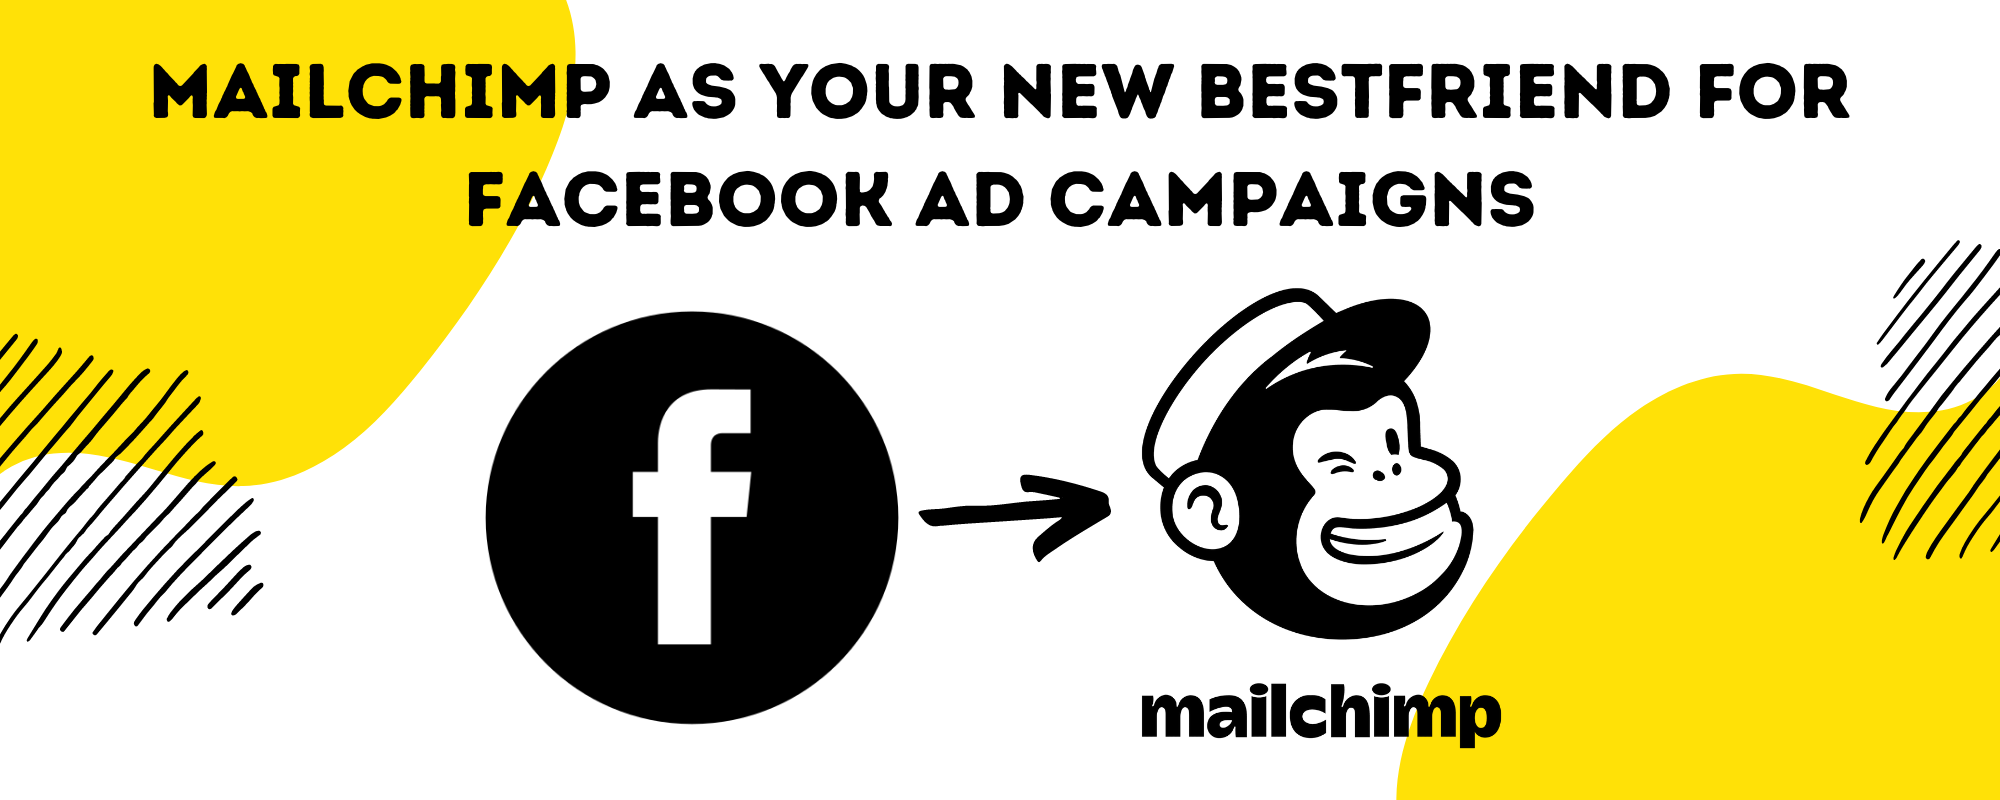 Facebook and Mailchimp logos